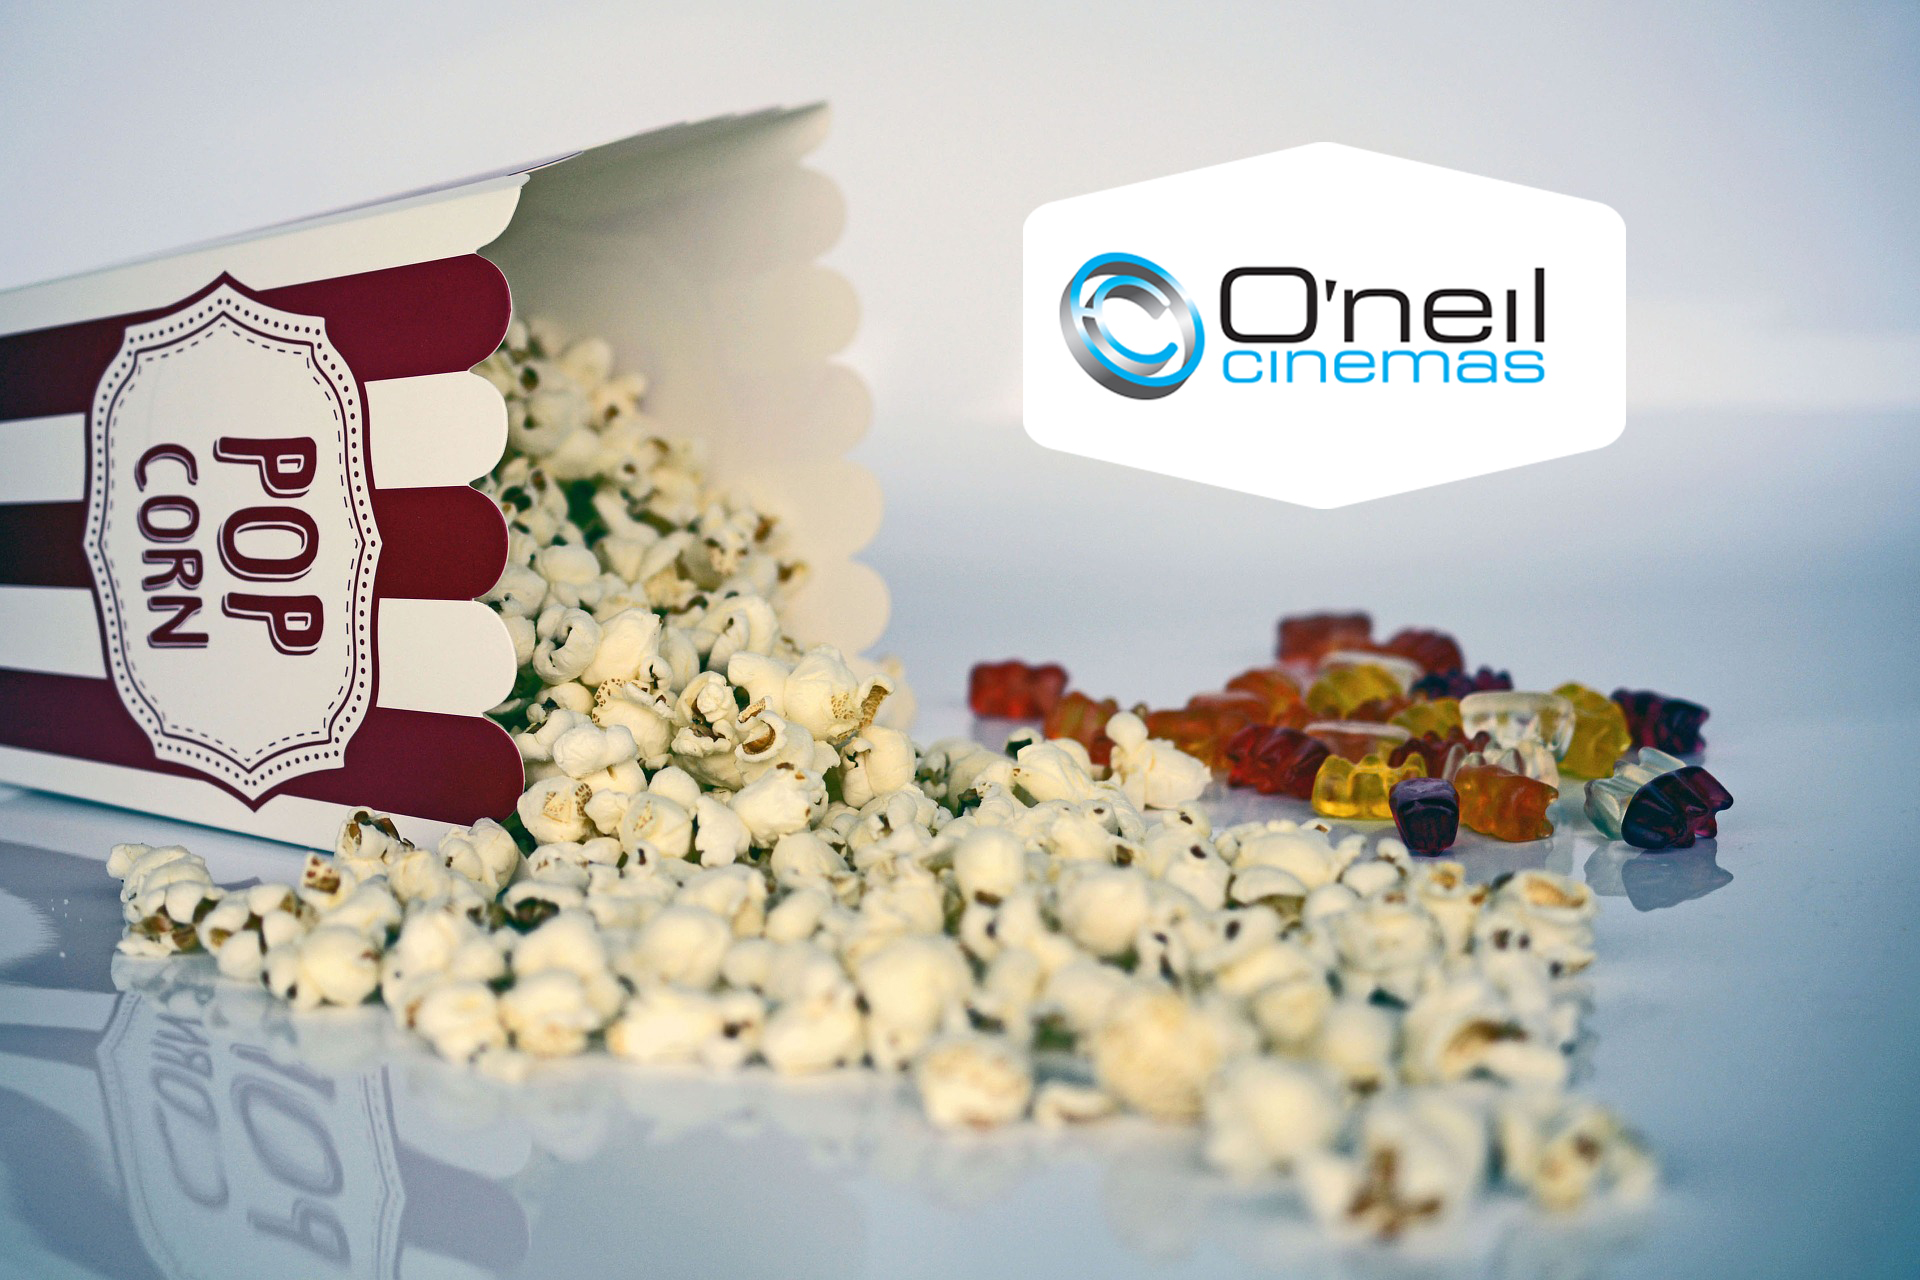 Win a Pair of O’neil Cinemas Movie Passes